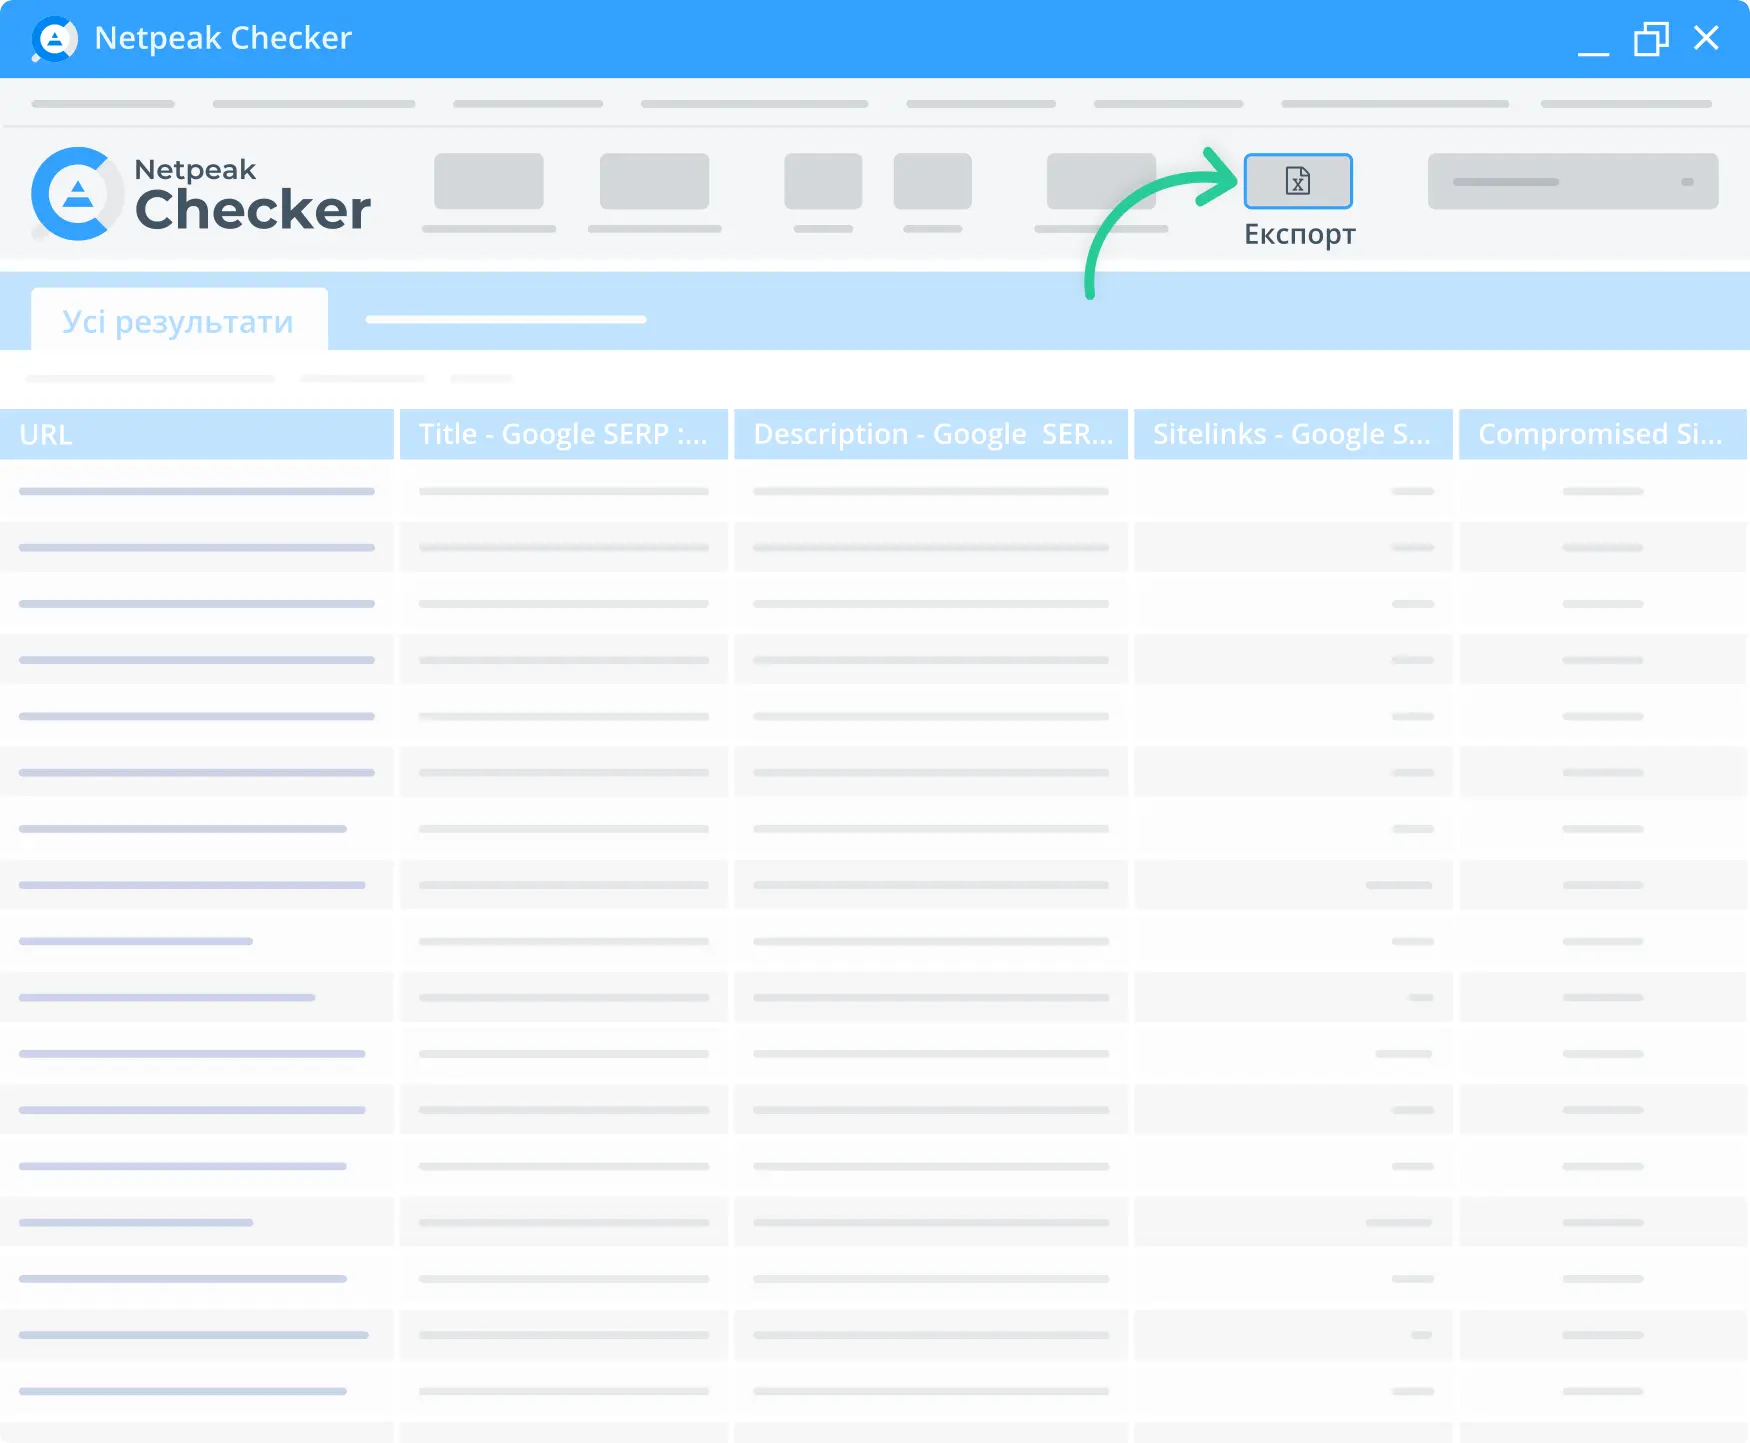 Експортуйте дані в один клік з Netpeak Checker